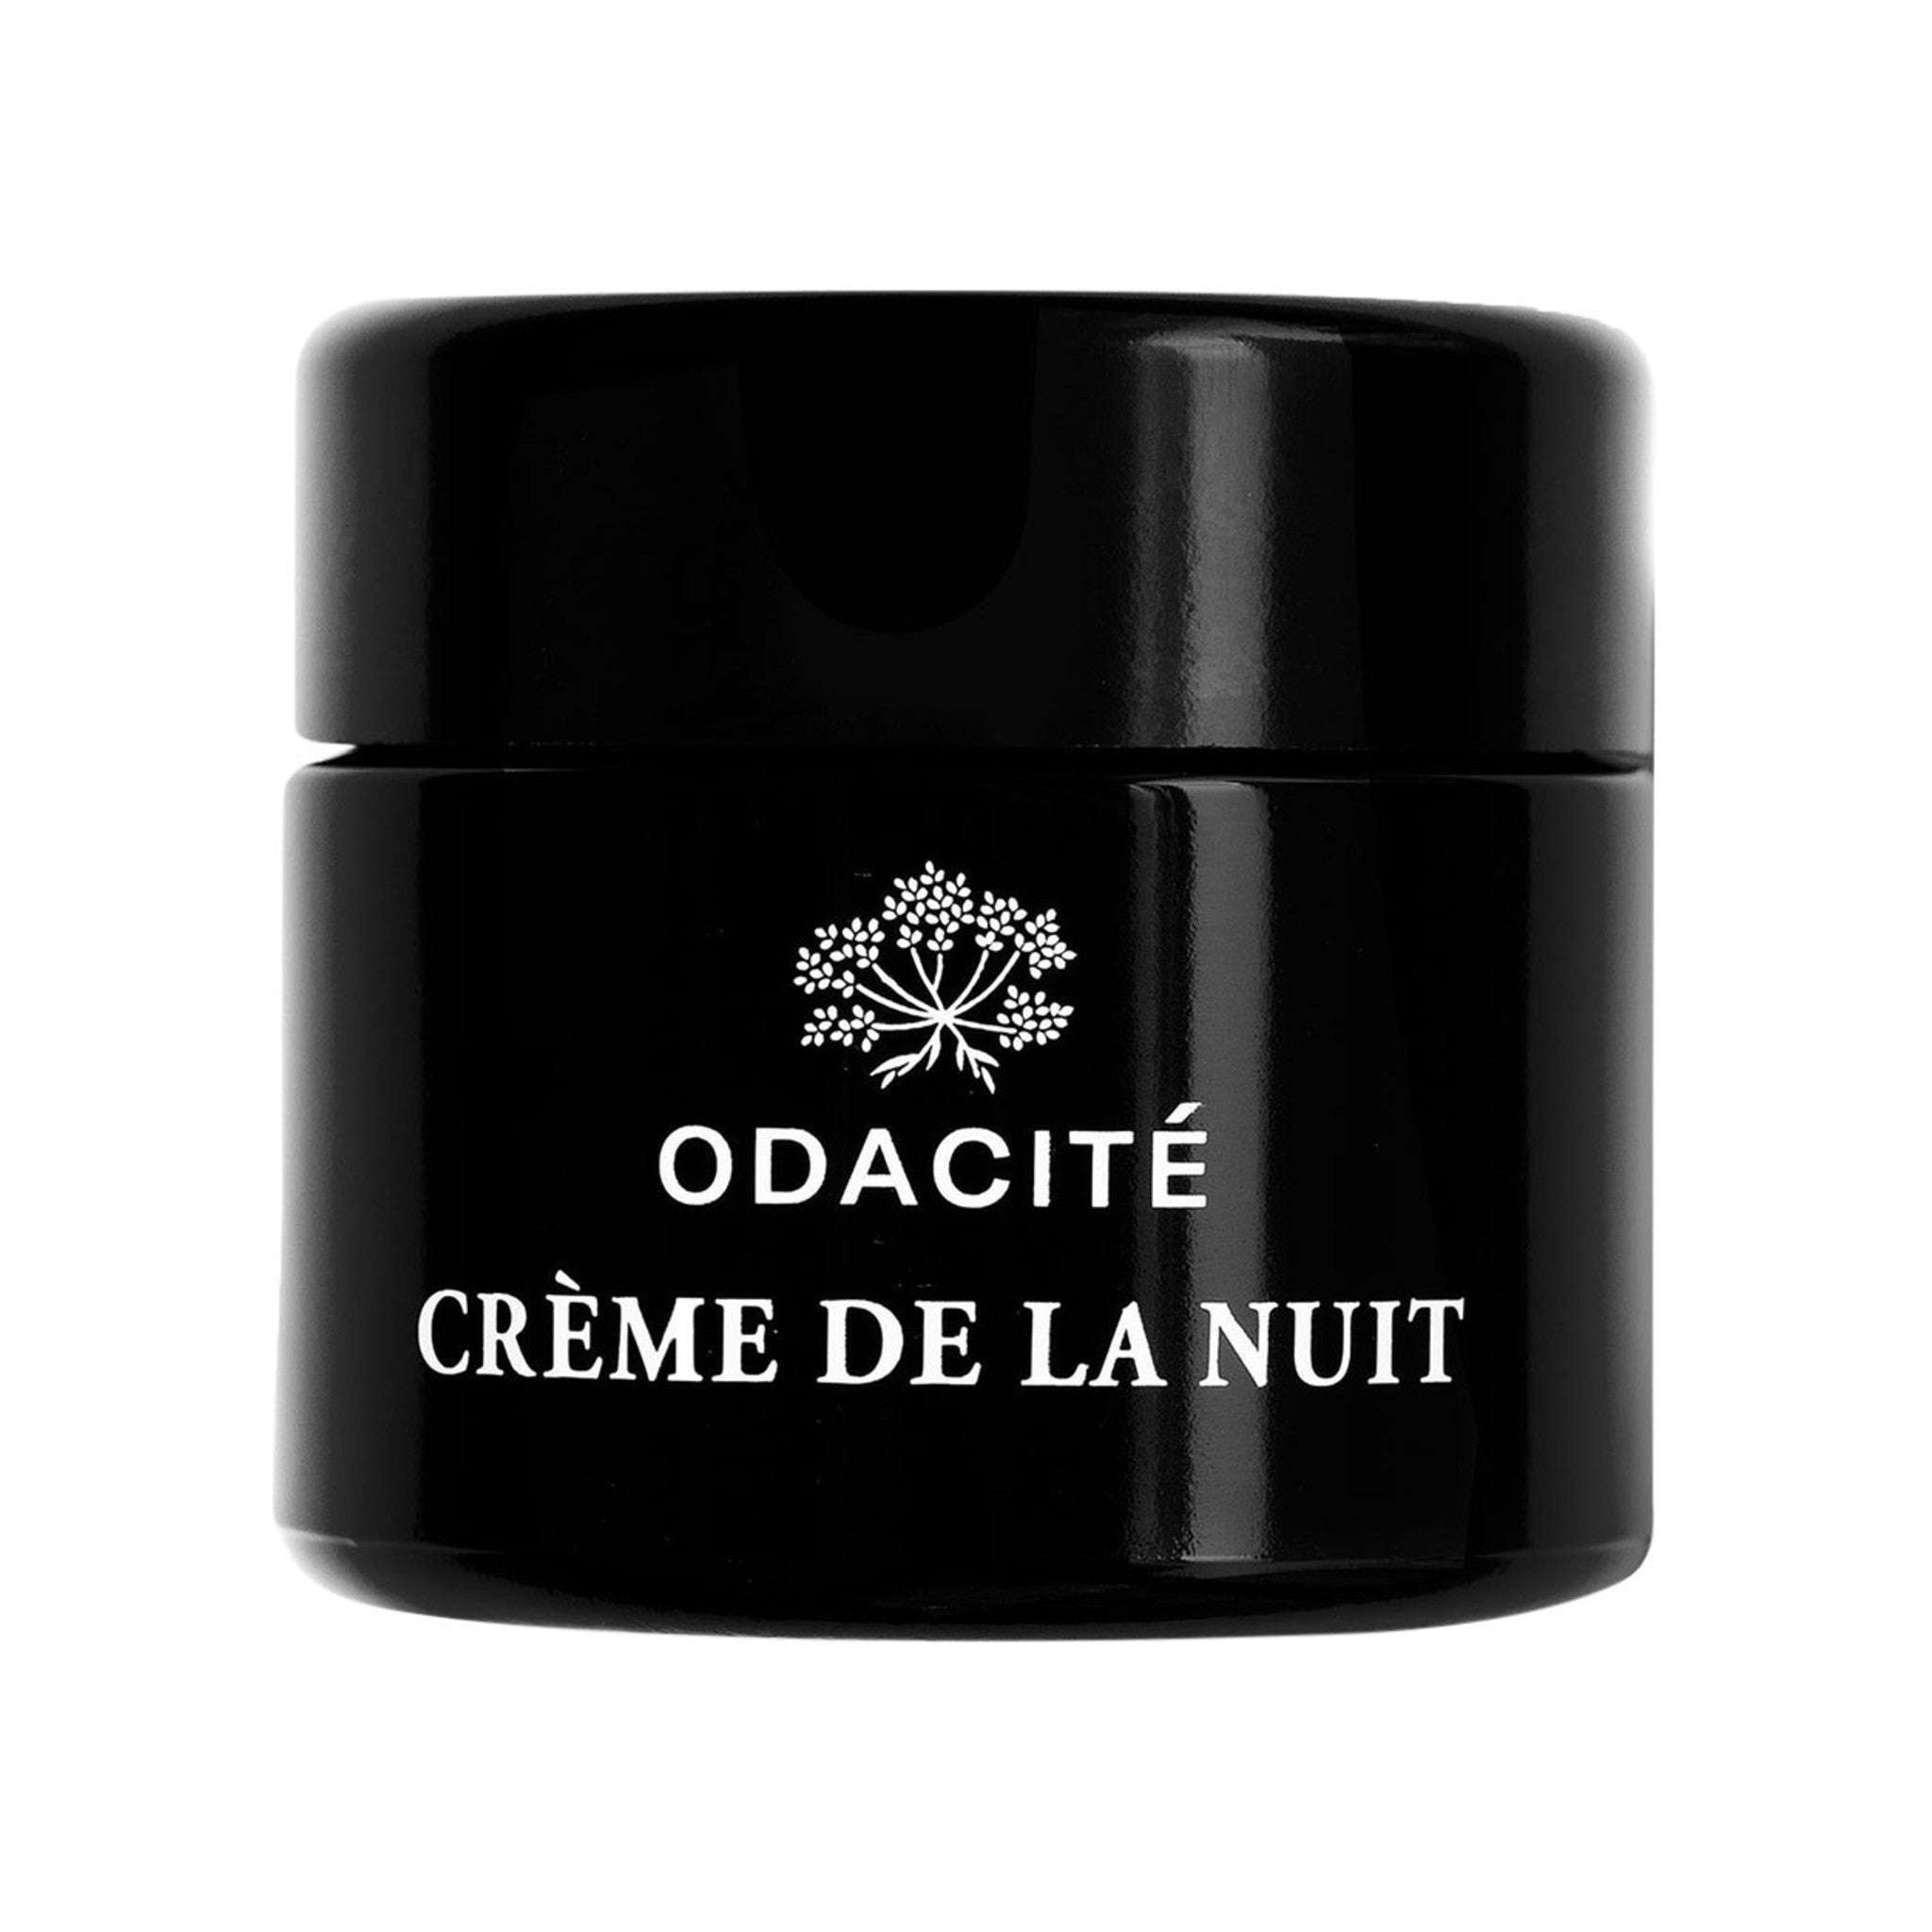 Odacité Crème de la Nuit main image.